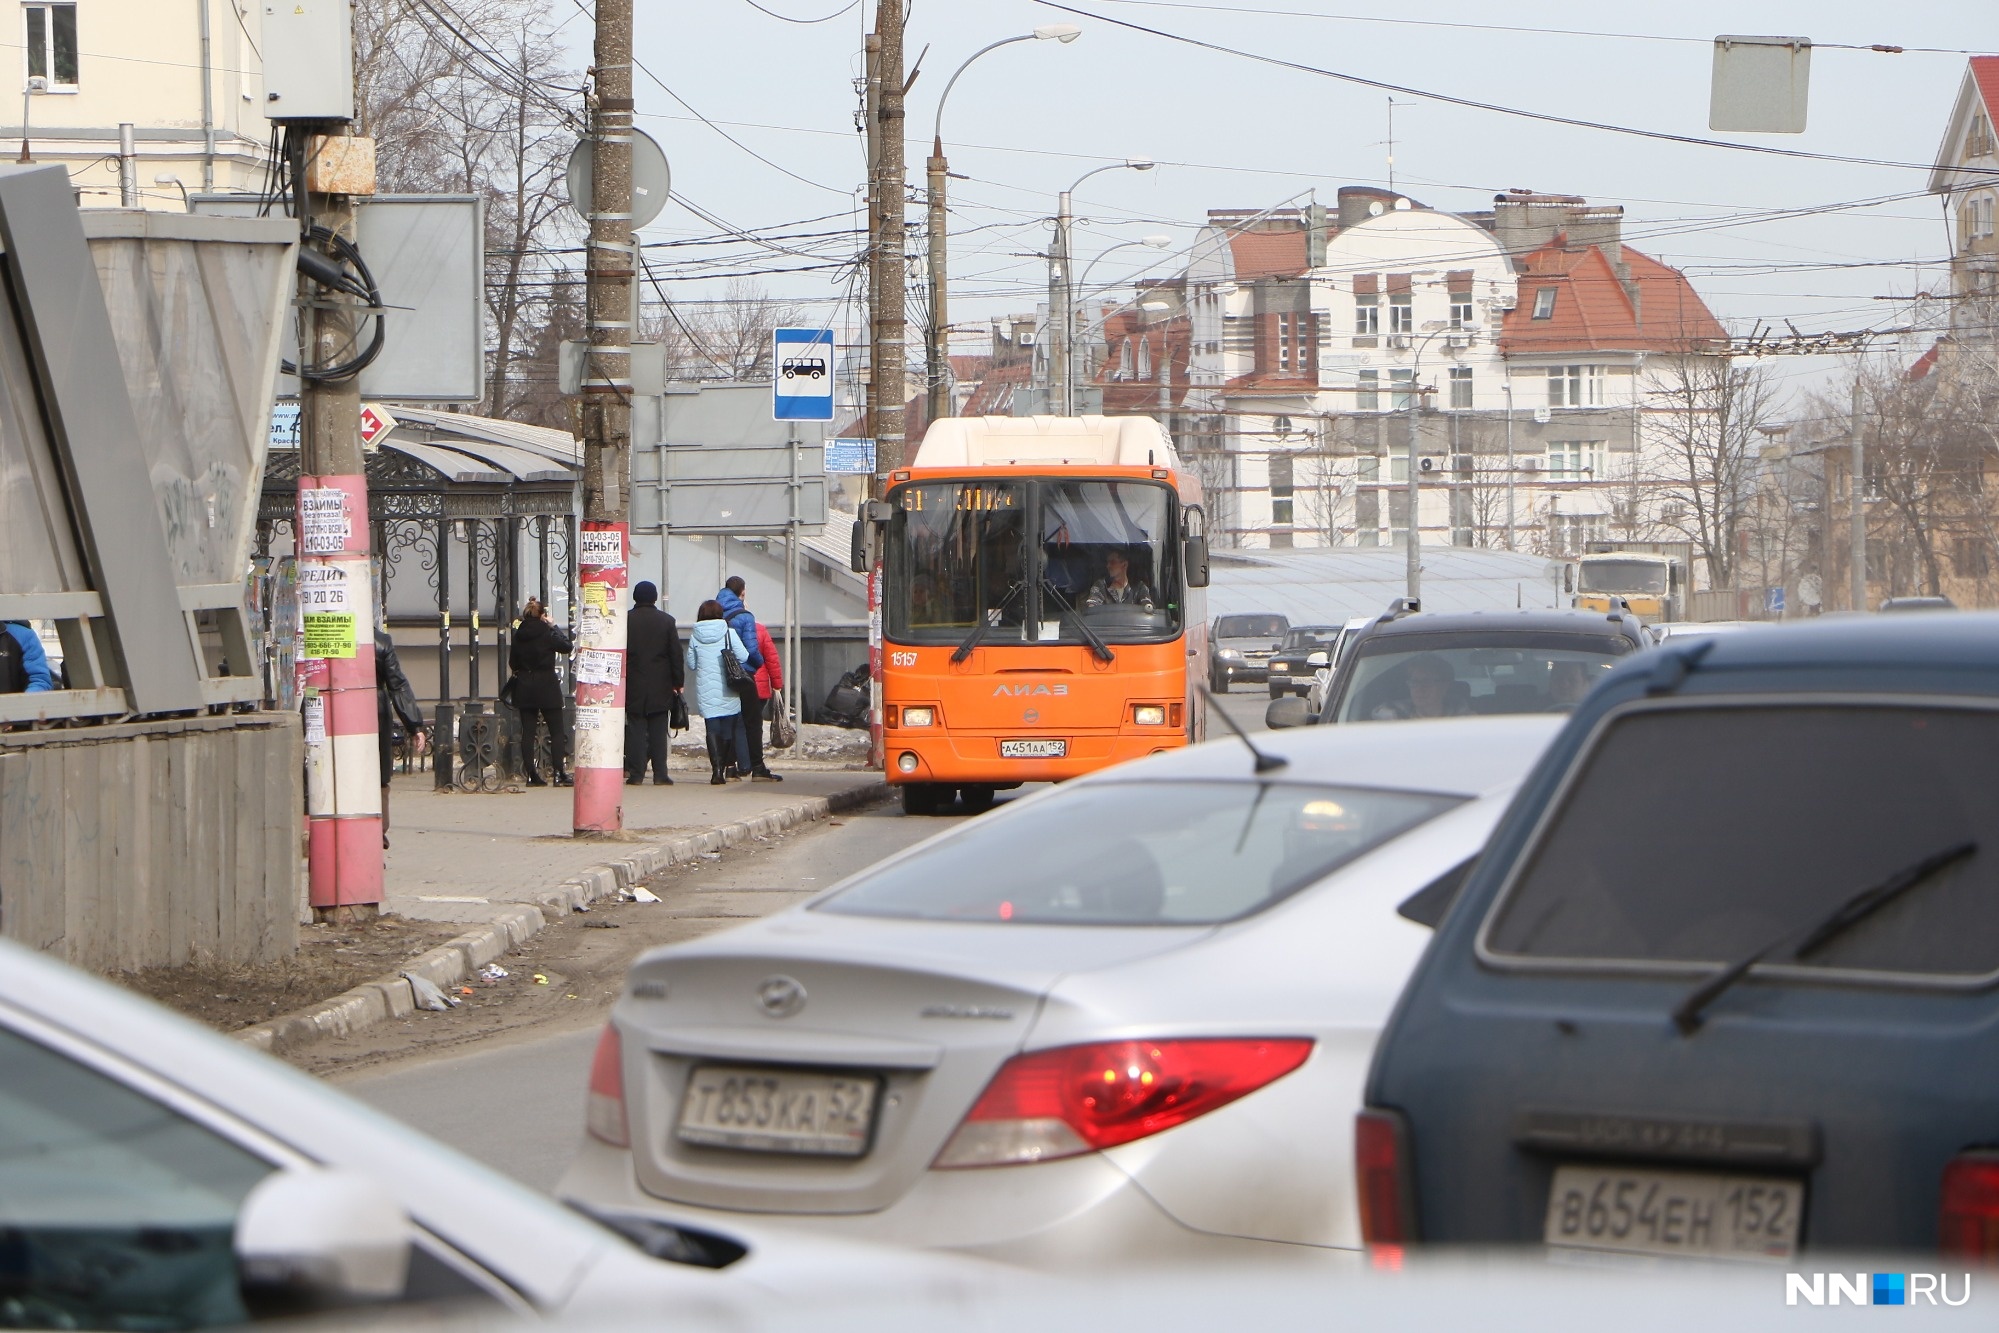 Автобусы изменят маршрут в Канавинском районе из-за ремонта трамвайных путей